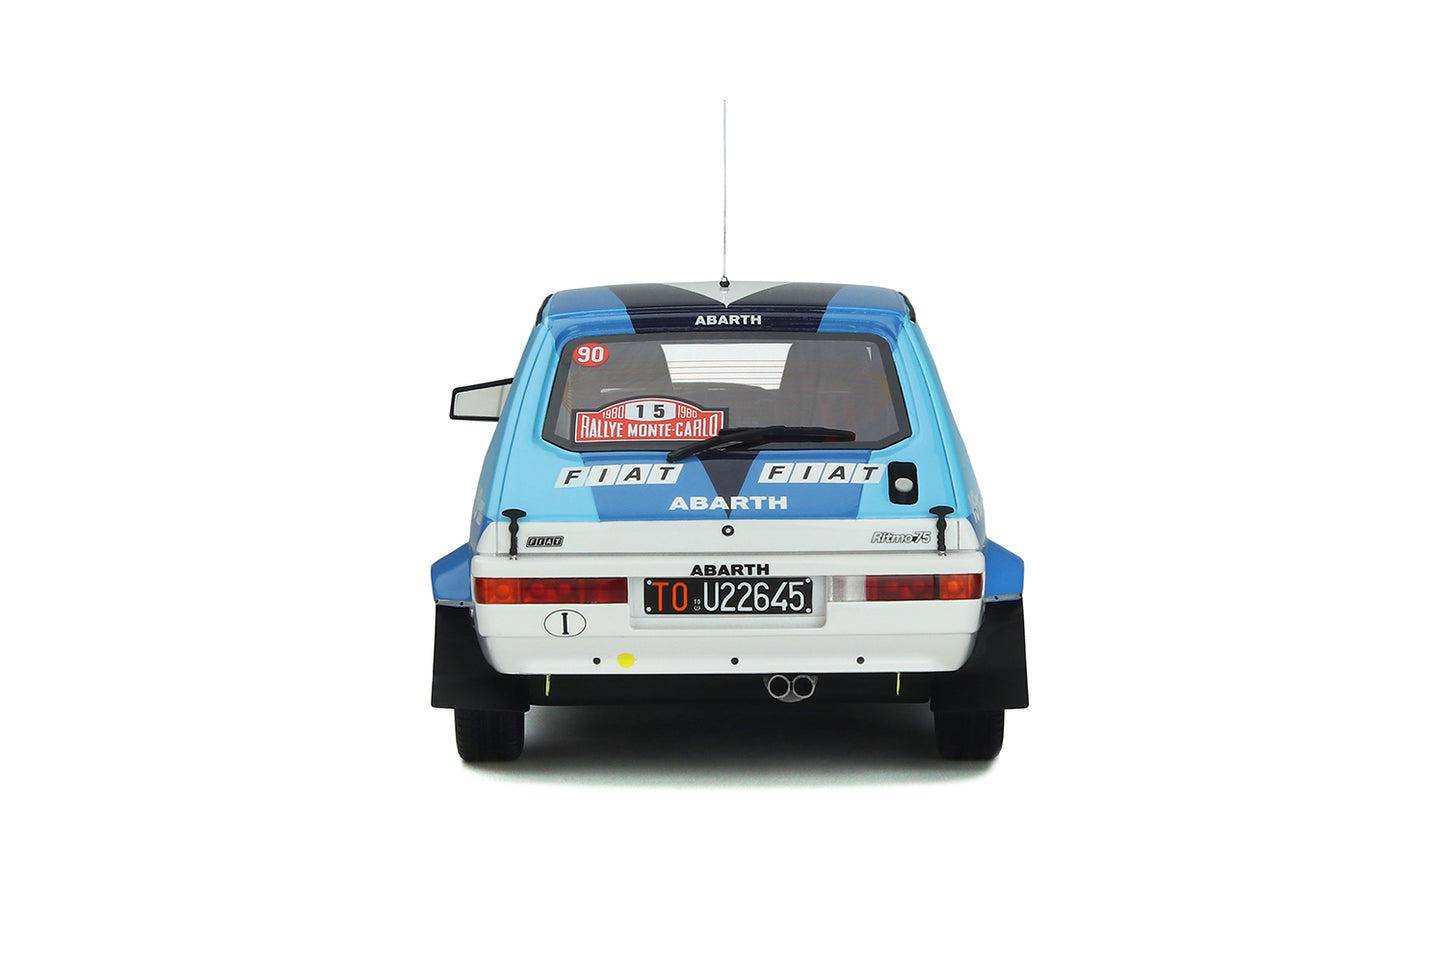 OTTO 1:18 1980 Monte Carlo Rally #15 Fiat Ritmo Abarth Gr.2 OT888